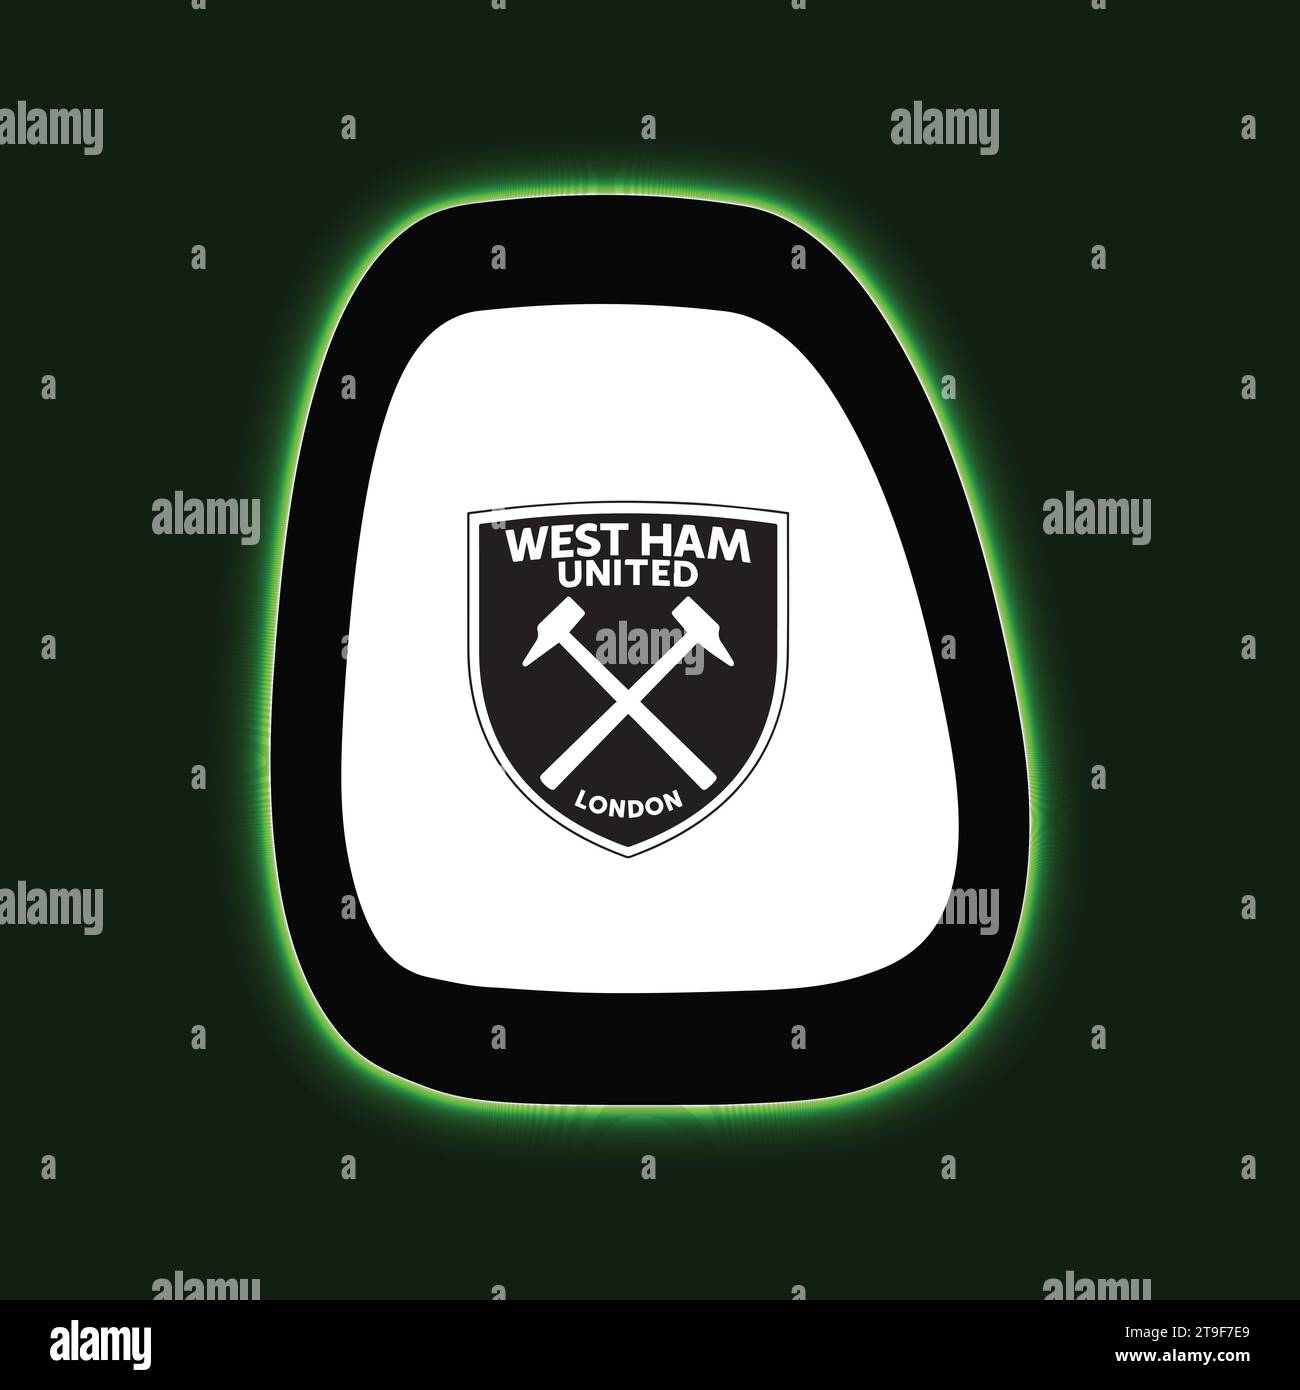 West Ham United FC Logo Neon Light Board Vista sfondo verde, squadra di calcio professionistica inglese illustrazione vettoriale immagine astratta modificabile Illustrazione Vettoriale